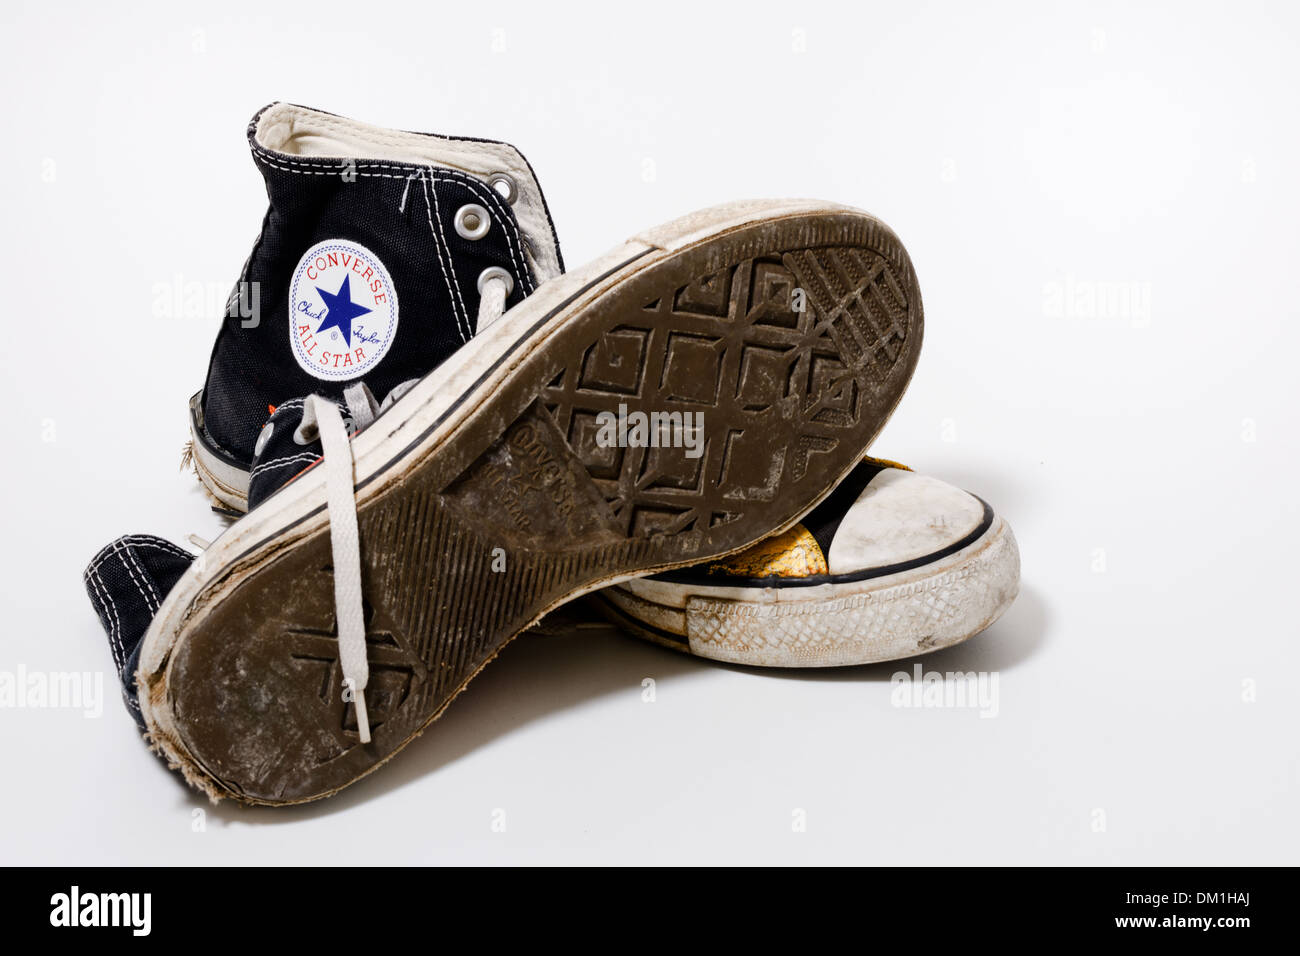 Usé et sale chaussures Converse All Star isolé sur fond blanc Banque D'Images